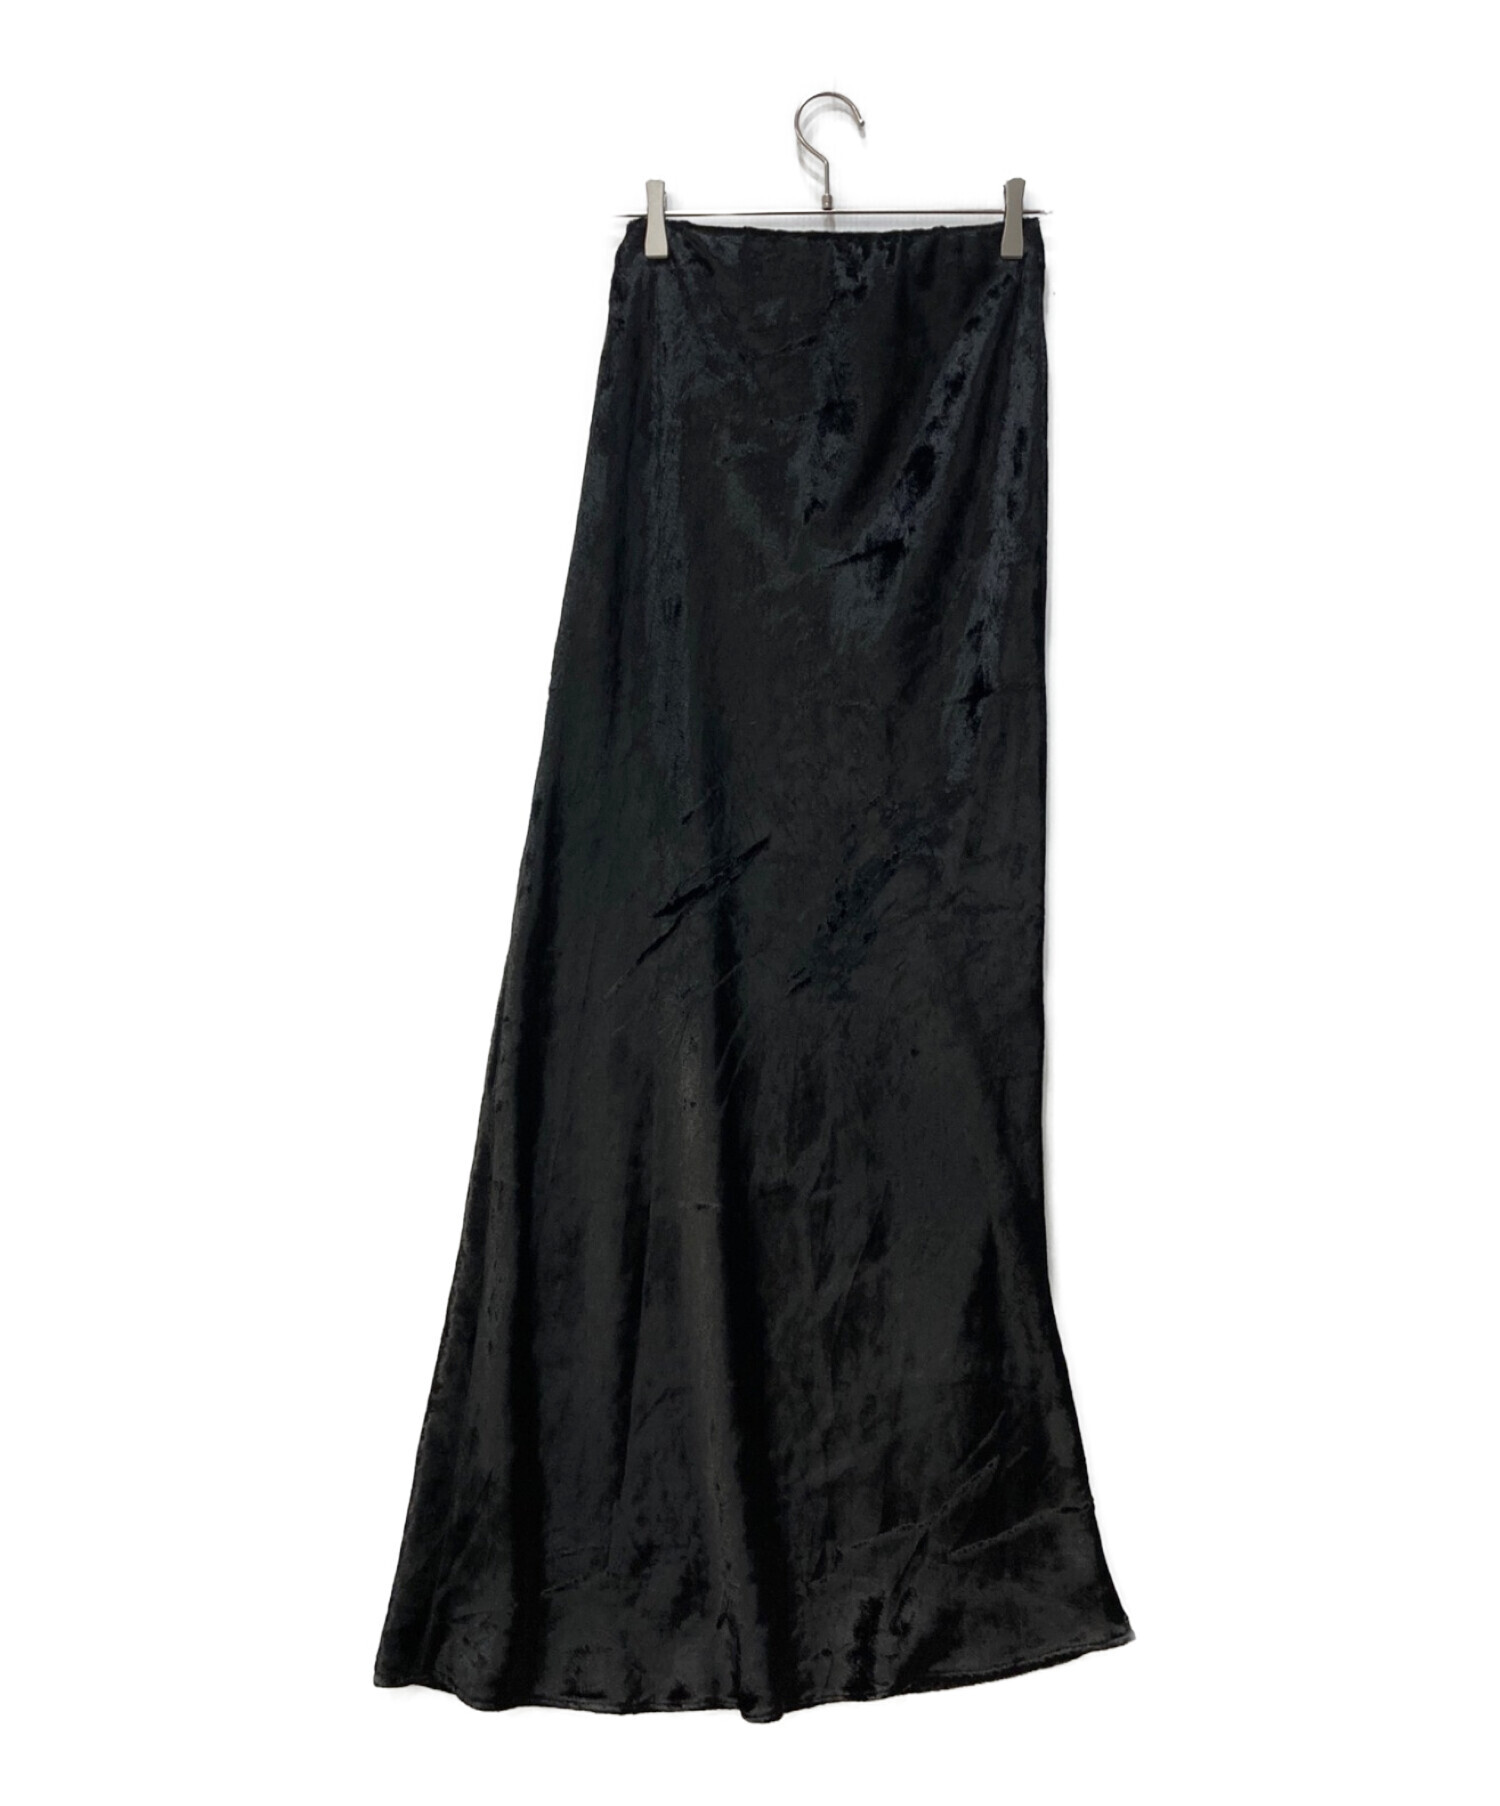 ENOF (イナフ) velvet long skirt ブラック サイズ:L